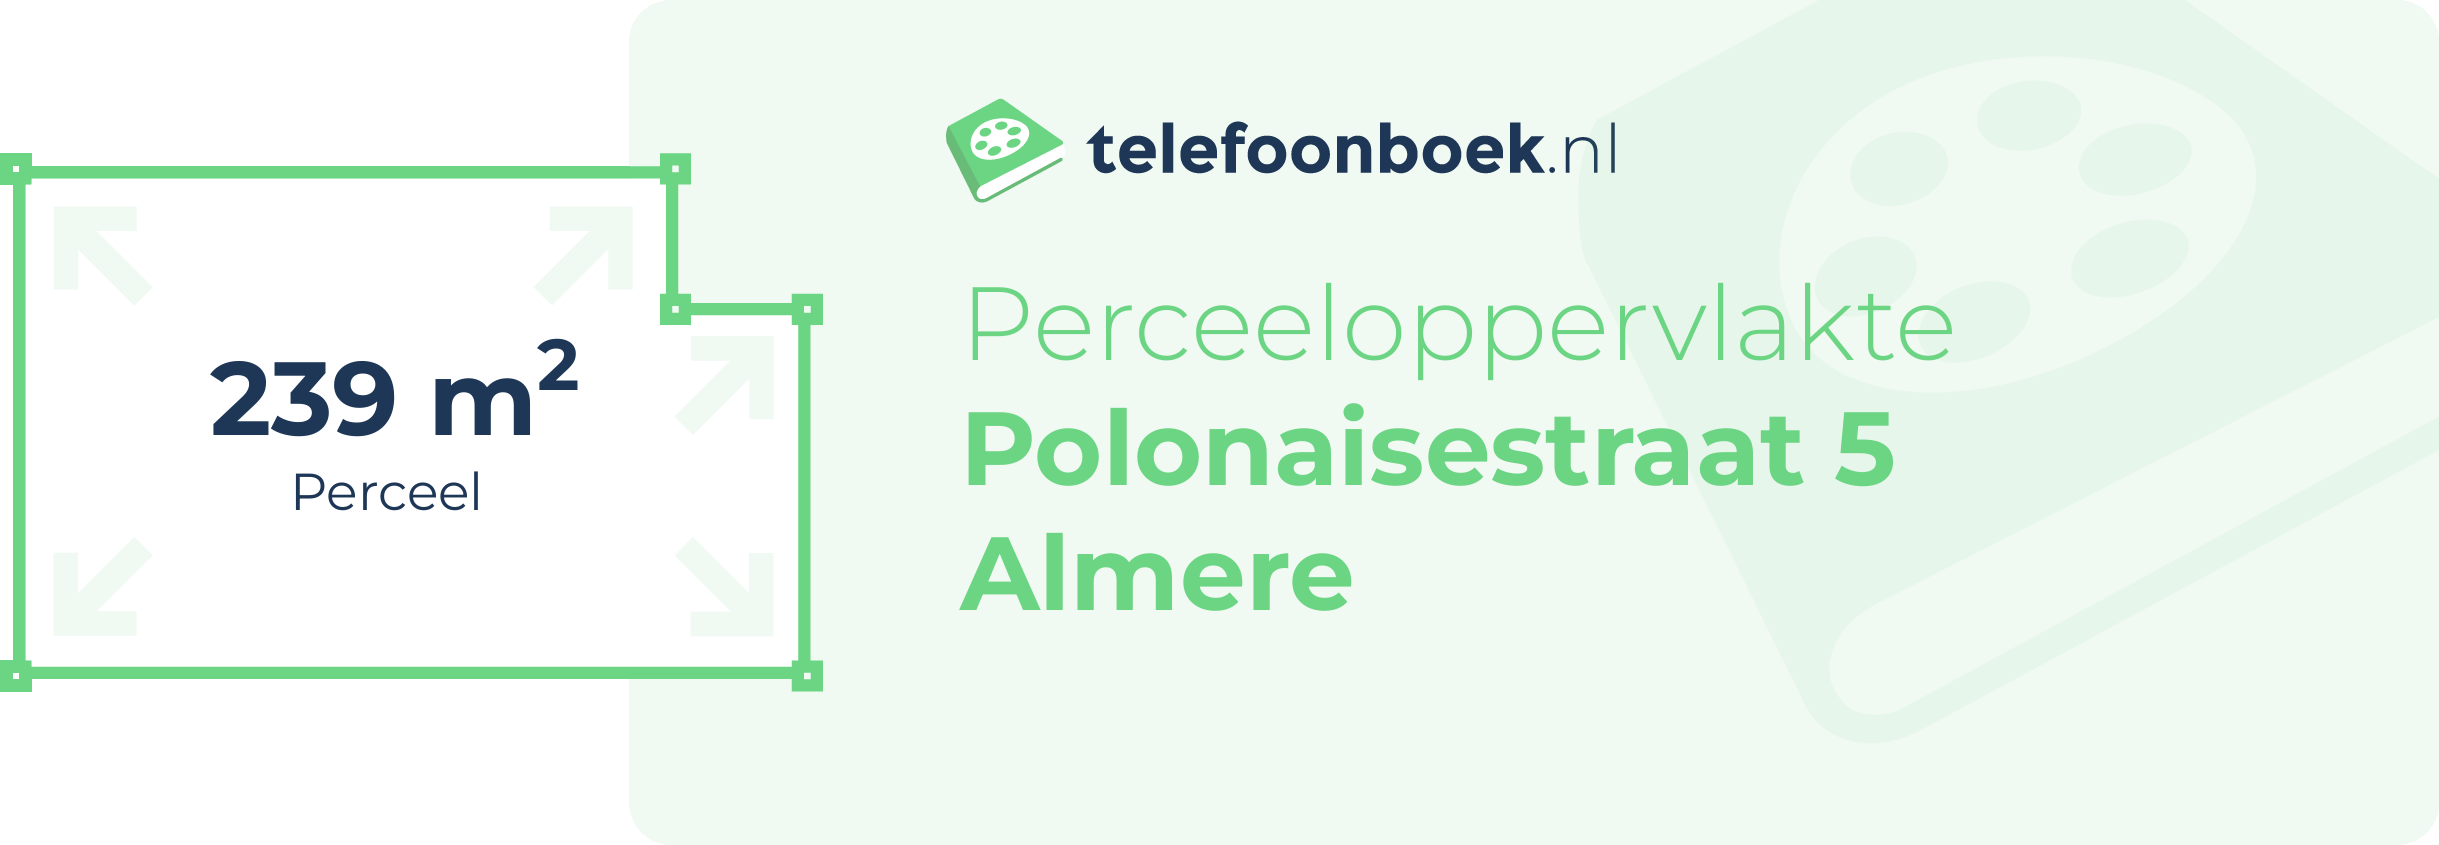 Perceeloppervlakte Polonaisestraat 5 Almere